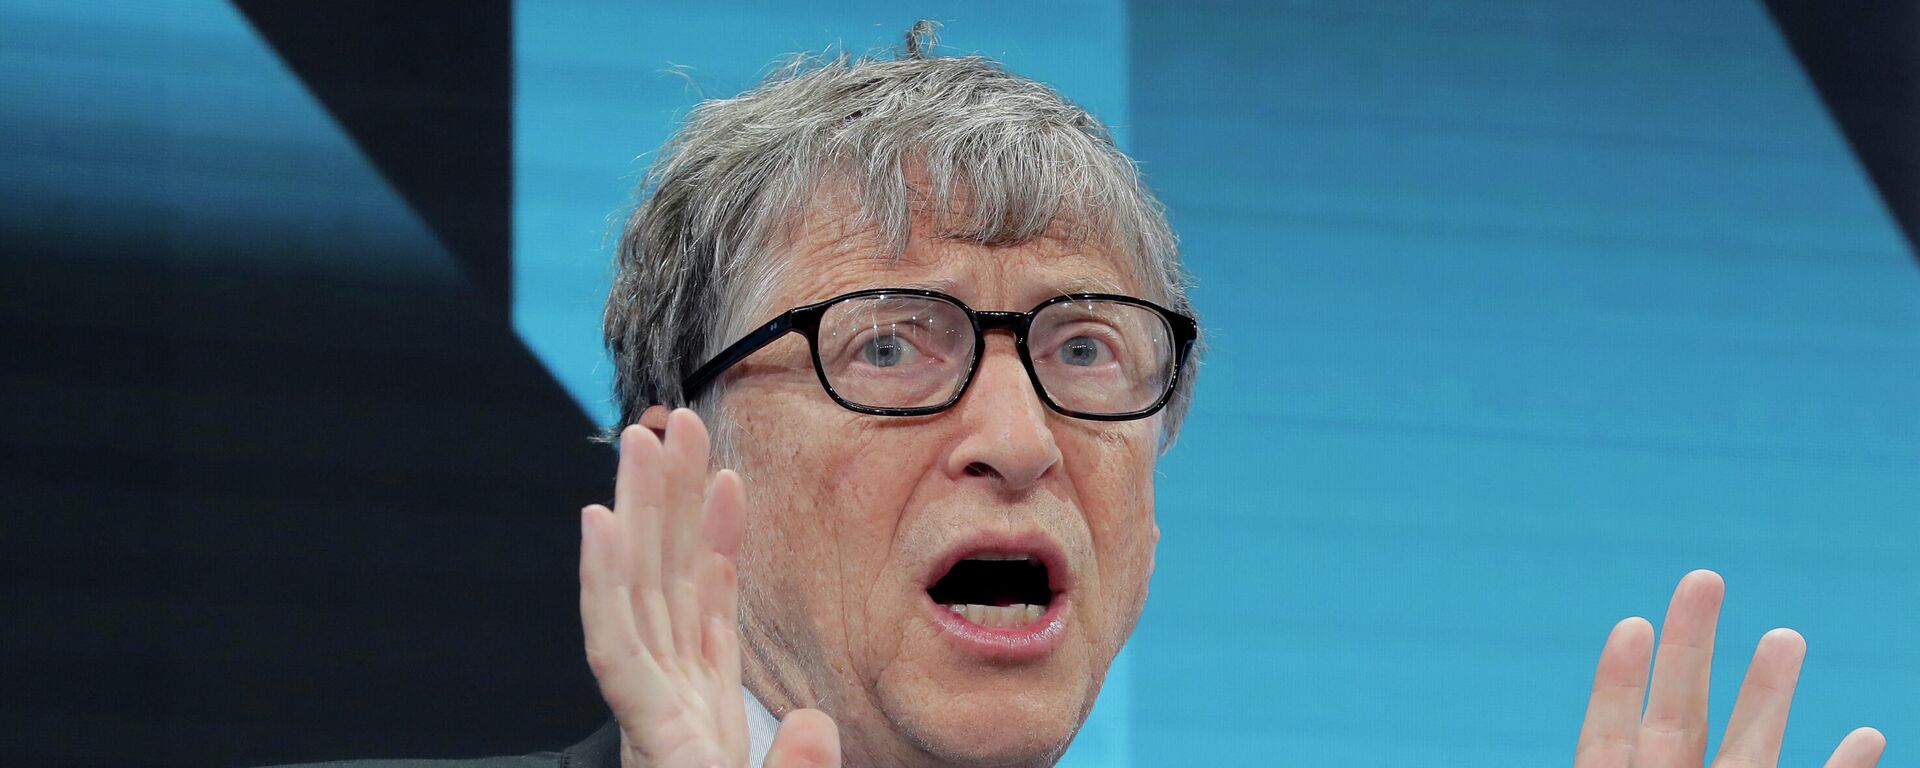 Bill Gates, multimillonario estadounidense, durante el Foro Económico Mundial en Davos (Suiza), el 22 de enero del 2019 - Sputnik Mundo, 1920, 23.03.2021